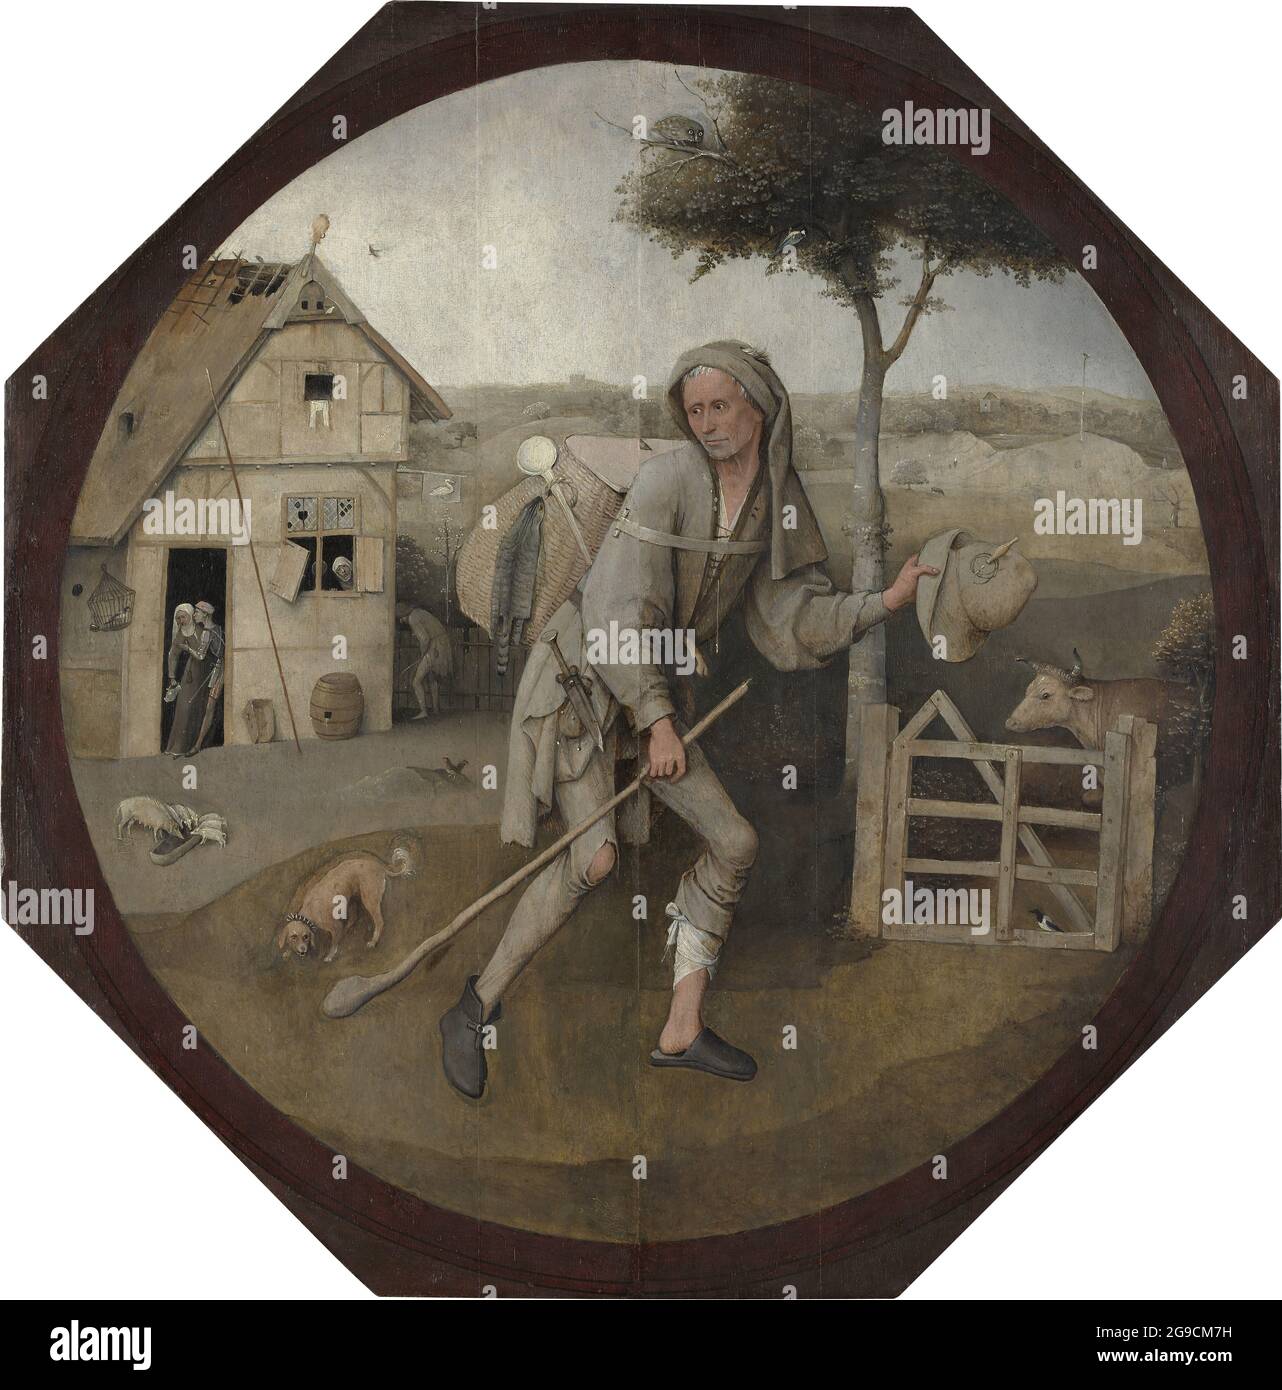 Titolo: The Peddler Creator: Hieronymus Bosch Data: c.15th Medio: Olio su pannello dimensioni: Diametro: 71cm Località: Rotterdam, Museo Boijmans Van Beuningen Foto Stock